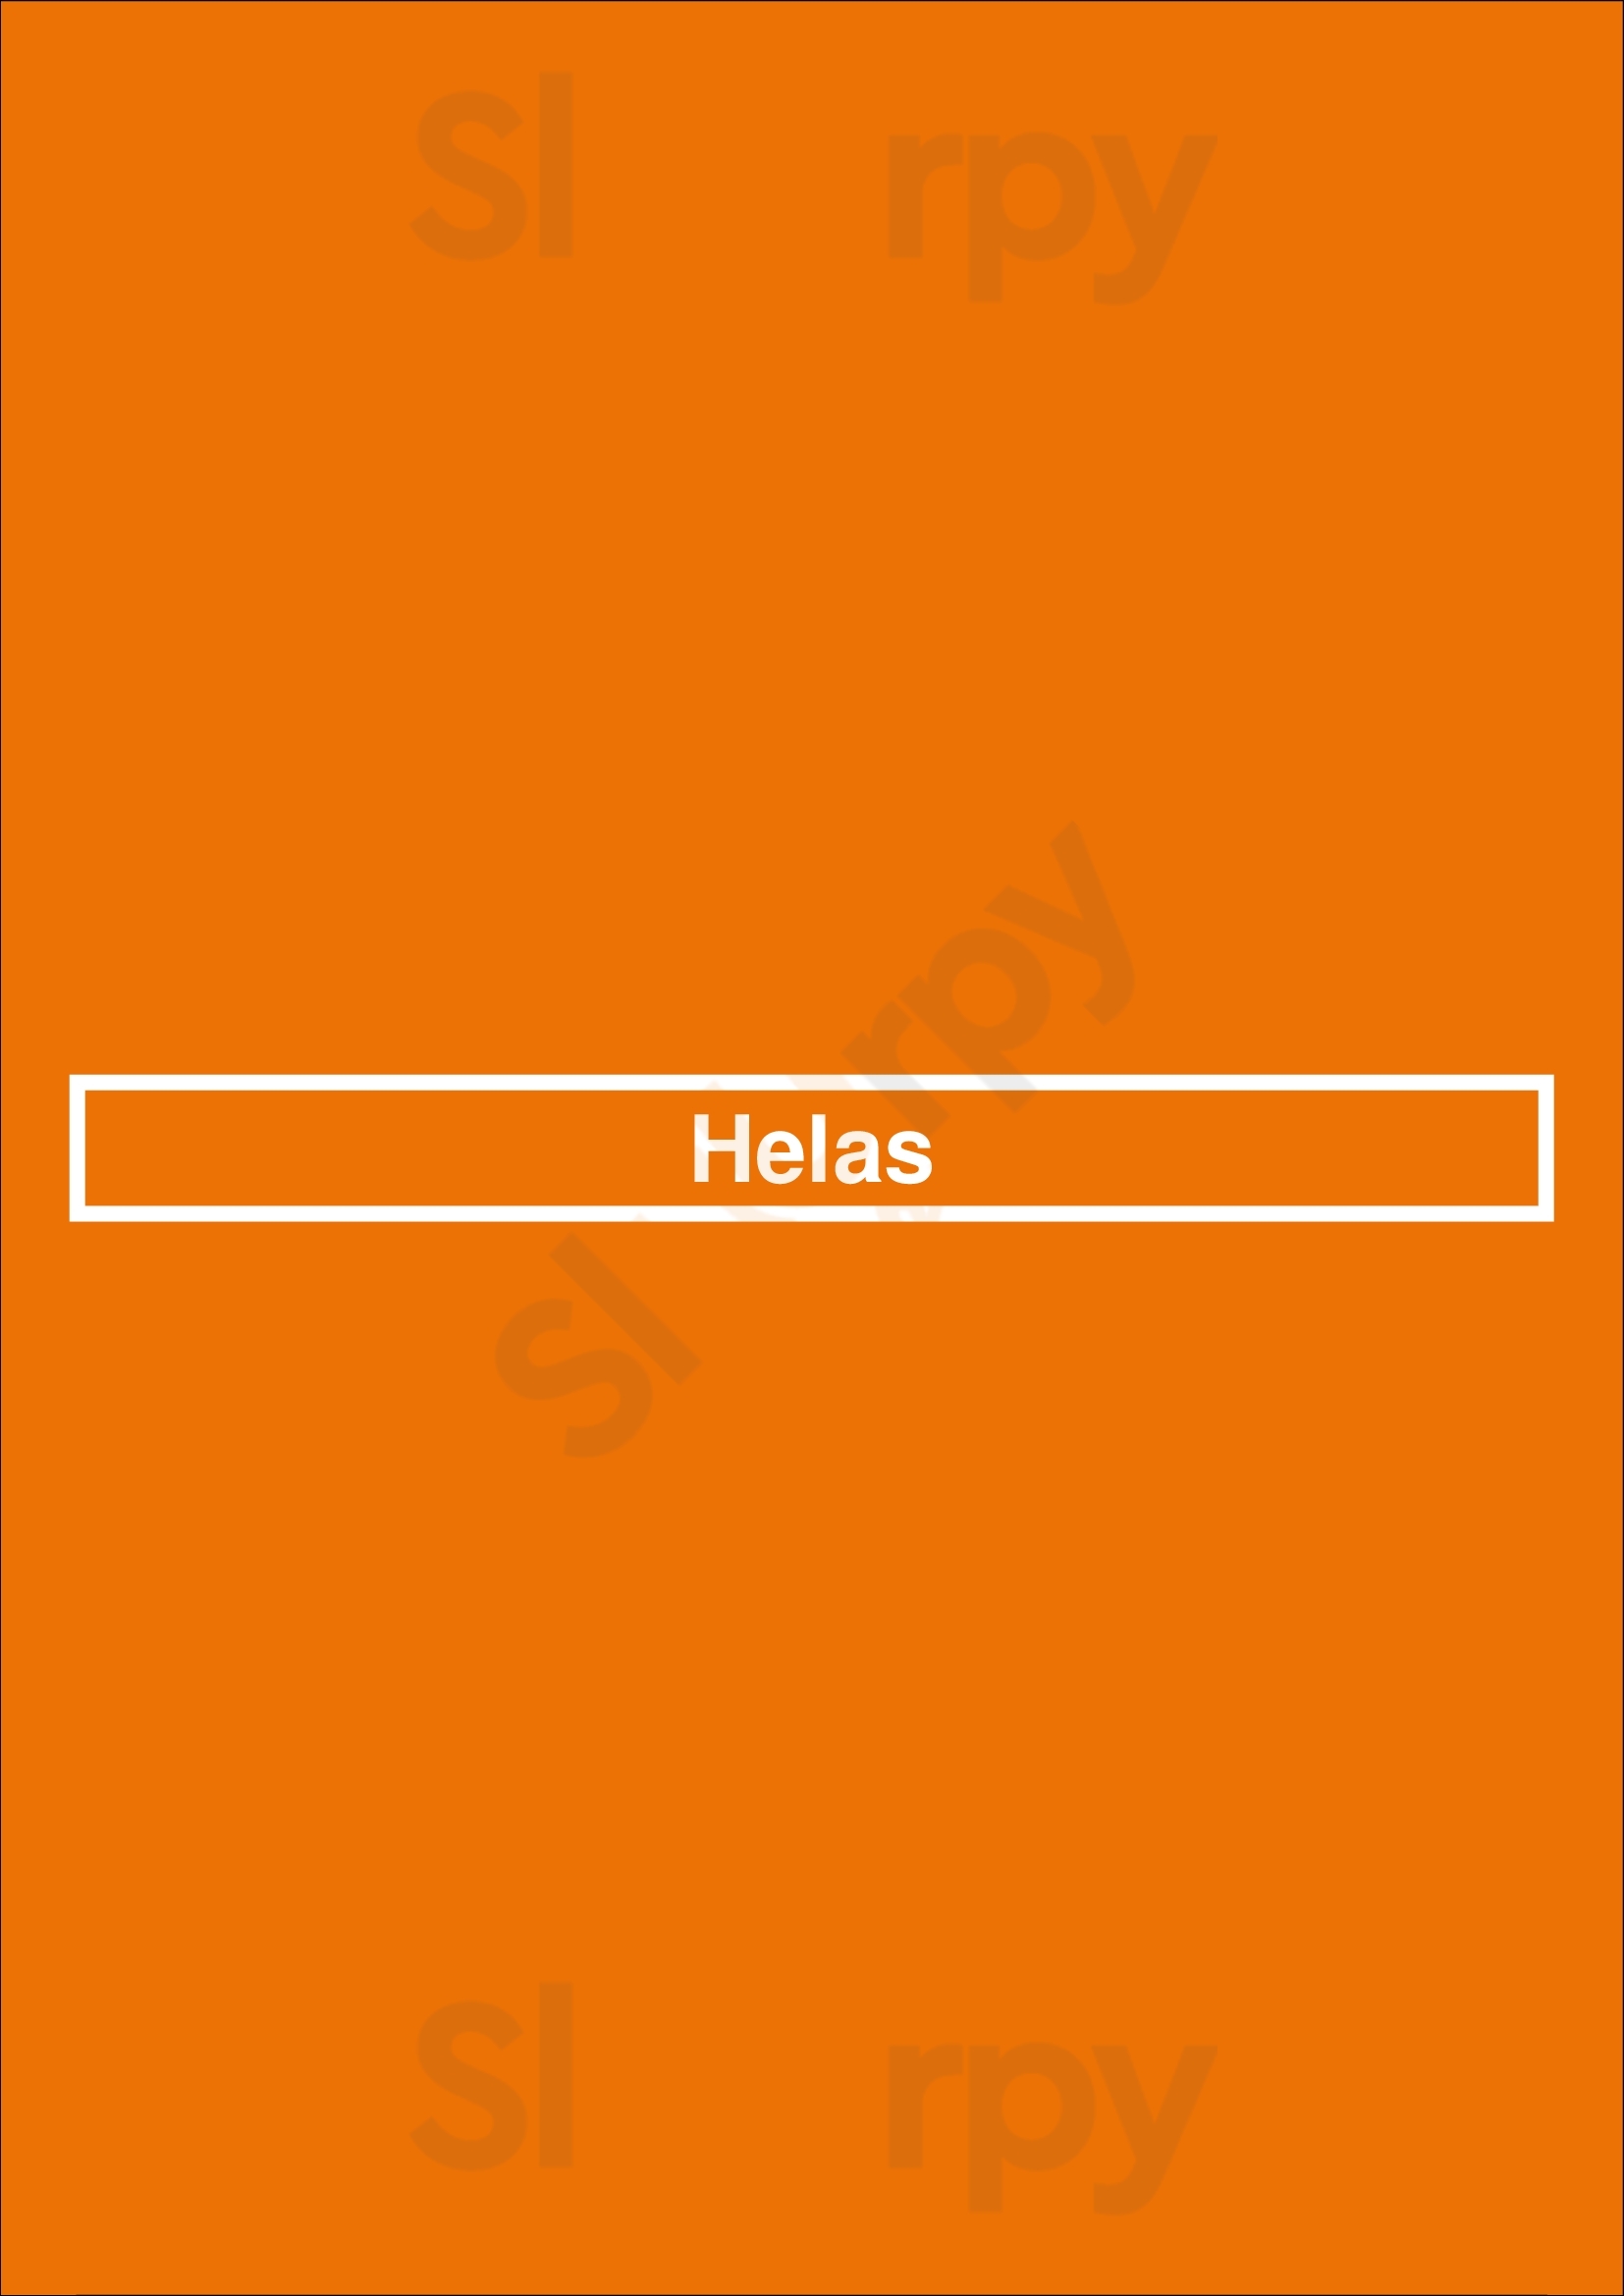 Helas Málaga Menu - 1